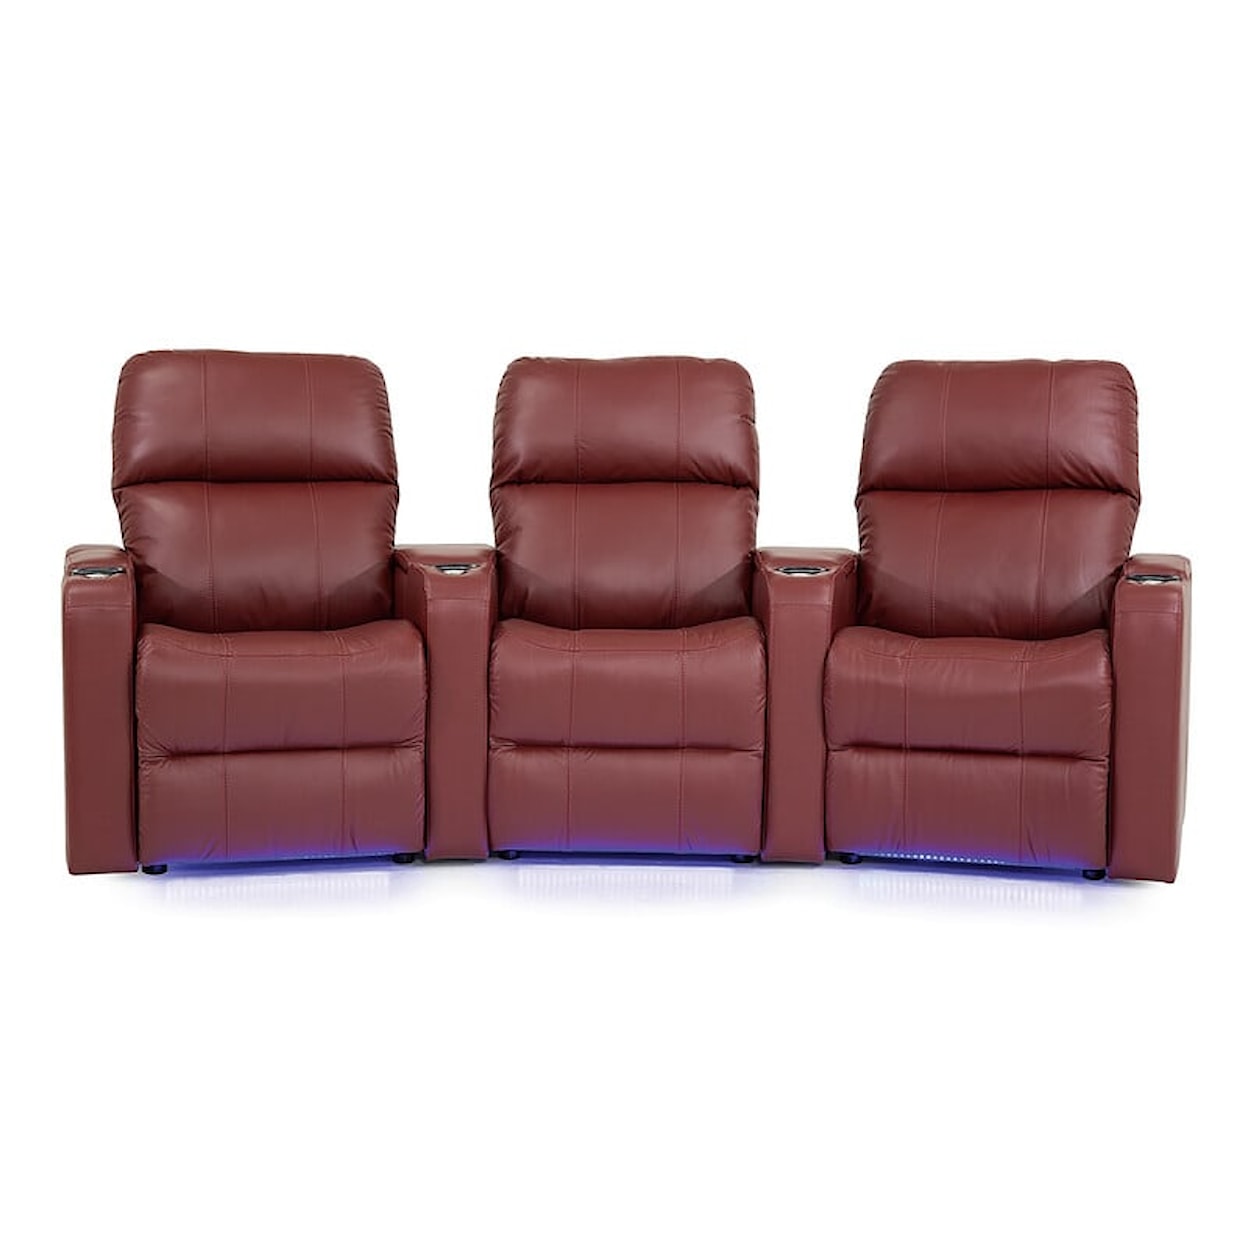 Palliser Elite Elite 3-Seat Power Reclining Theater Seating